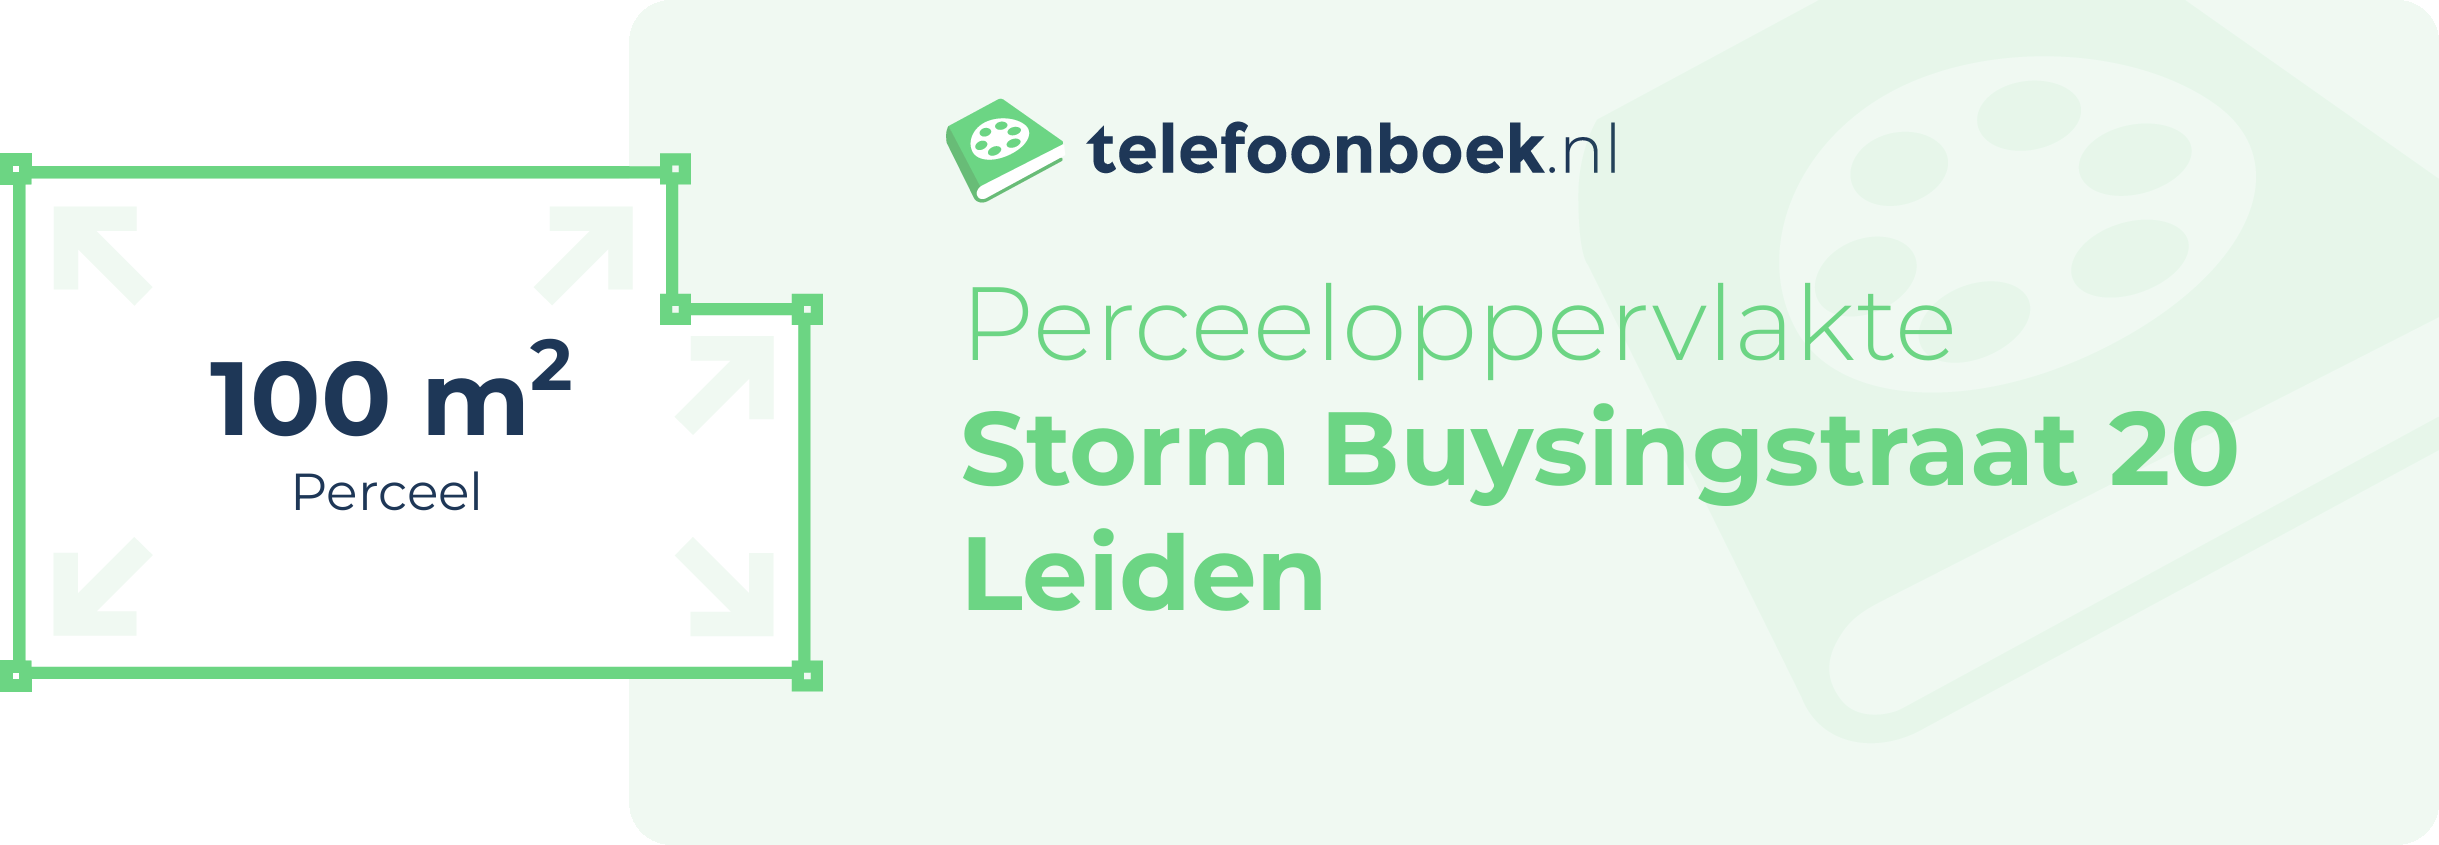 Perceeloppervlakte Storm Buysingstraat 20 Leiden